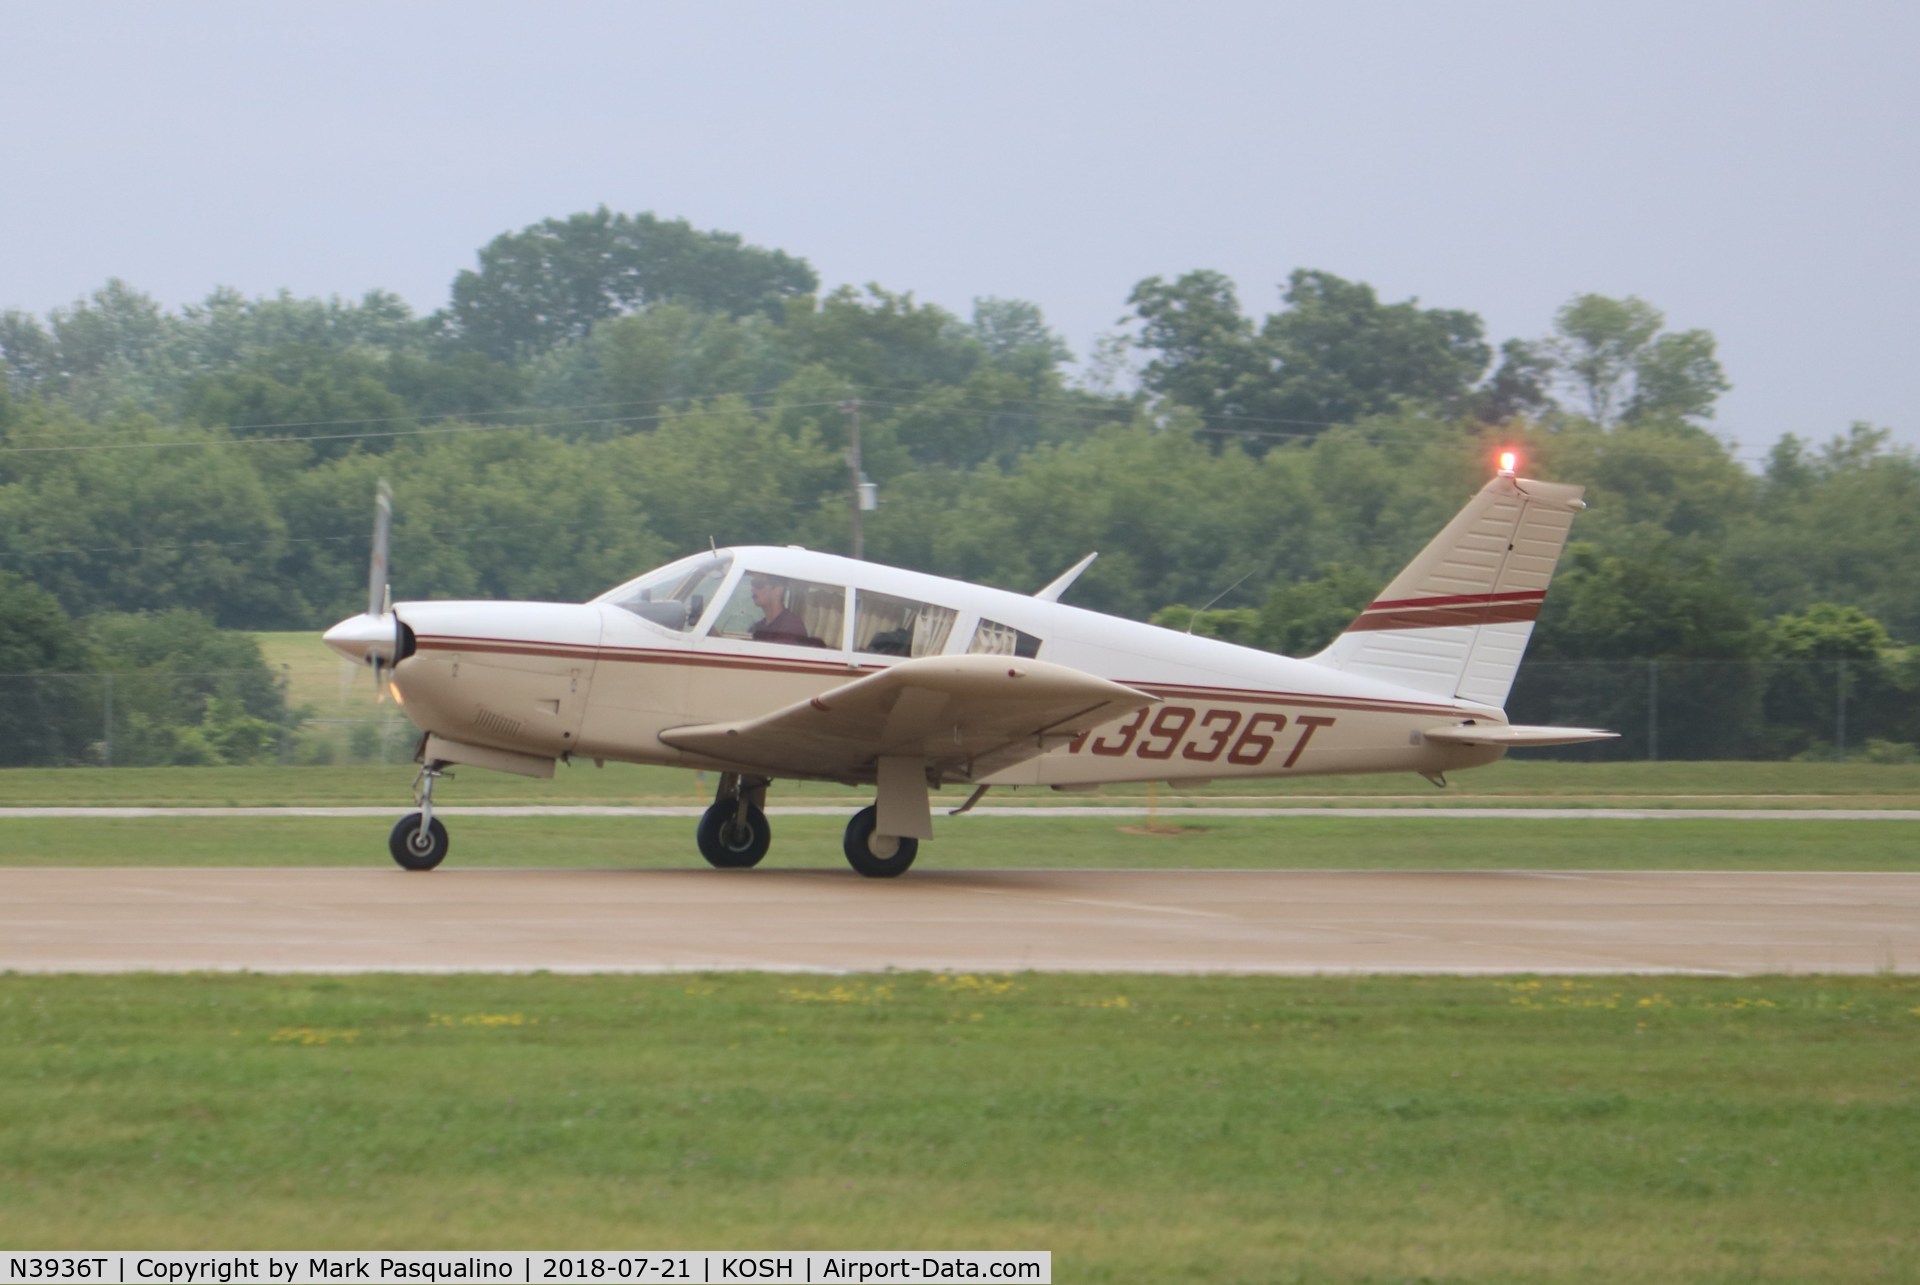 N3936T, 1967 Piper PA-28R-180 Cherokee Arrow C/N 28R-30277, Piper PA-28R-180